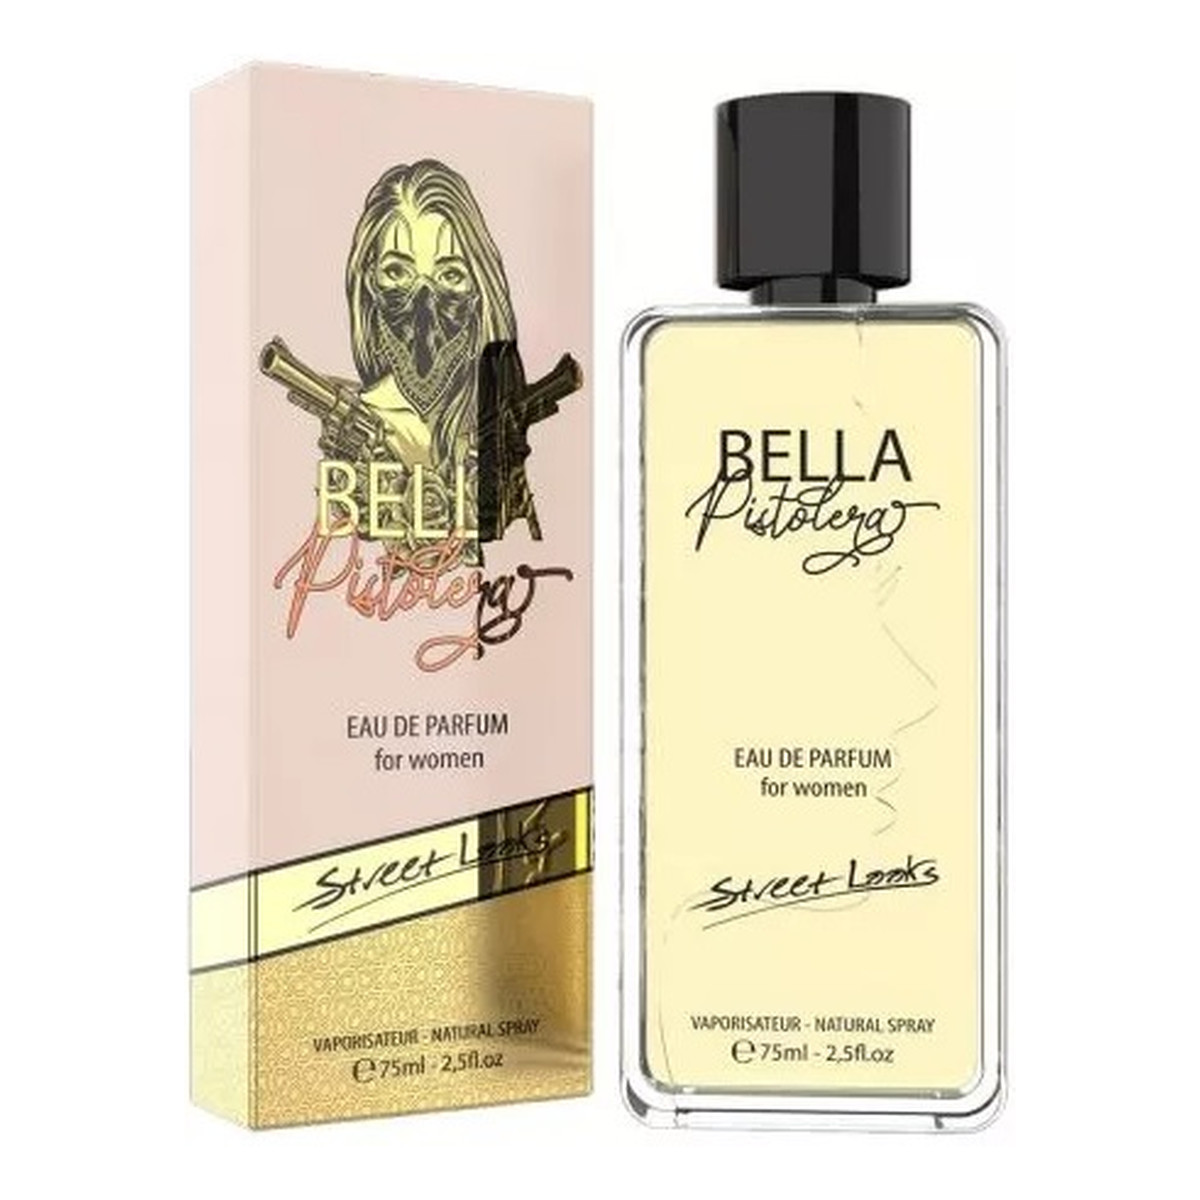 Street Looks Bella Pistolera Femme Woda perfumowana spray 75ml